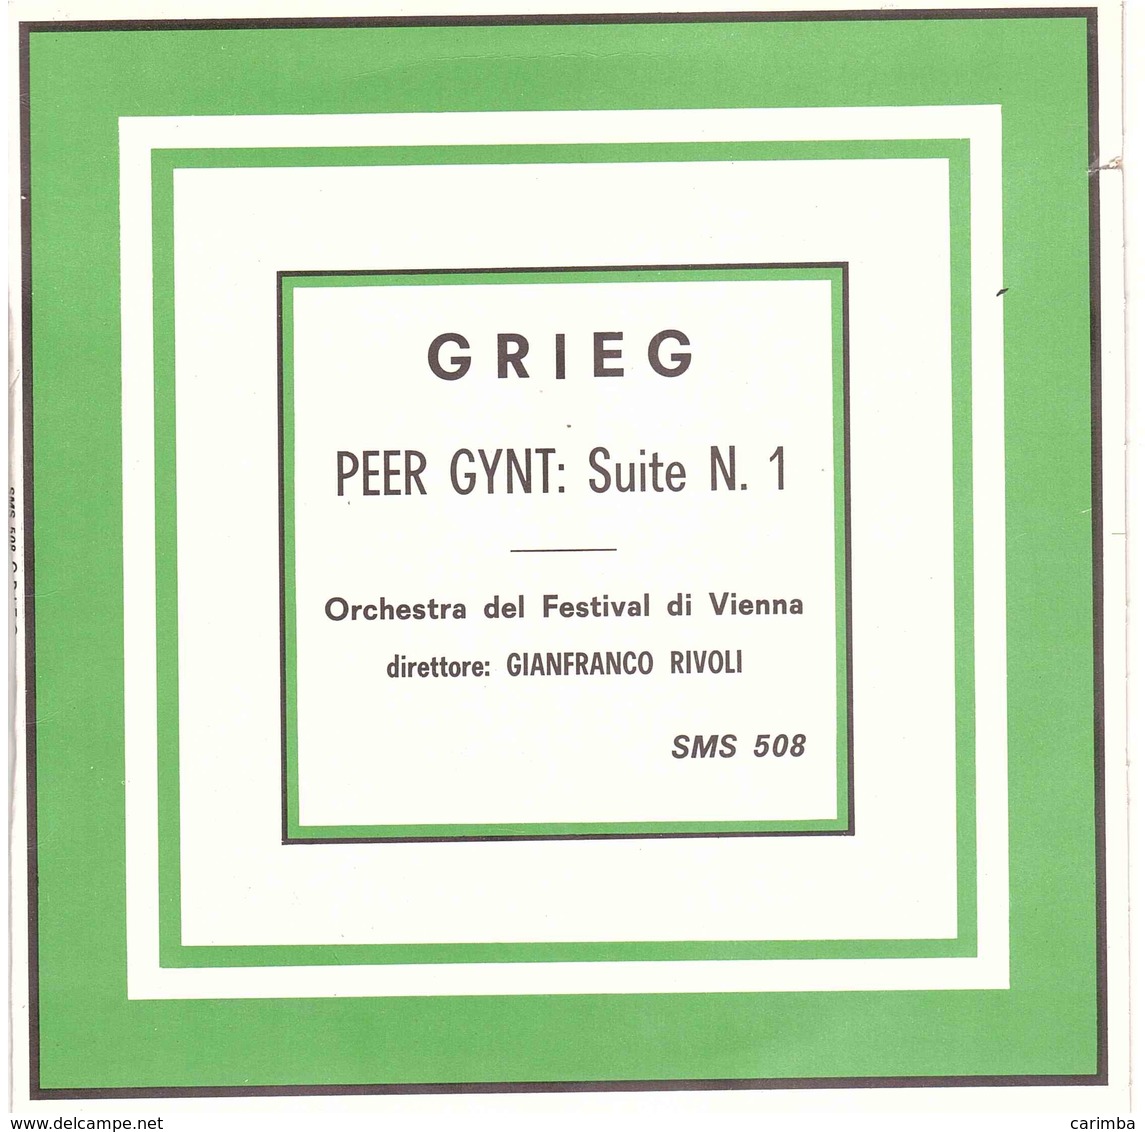 GRIEG PEER GYNT SUITE N°1 - Classical